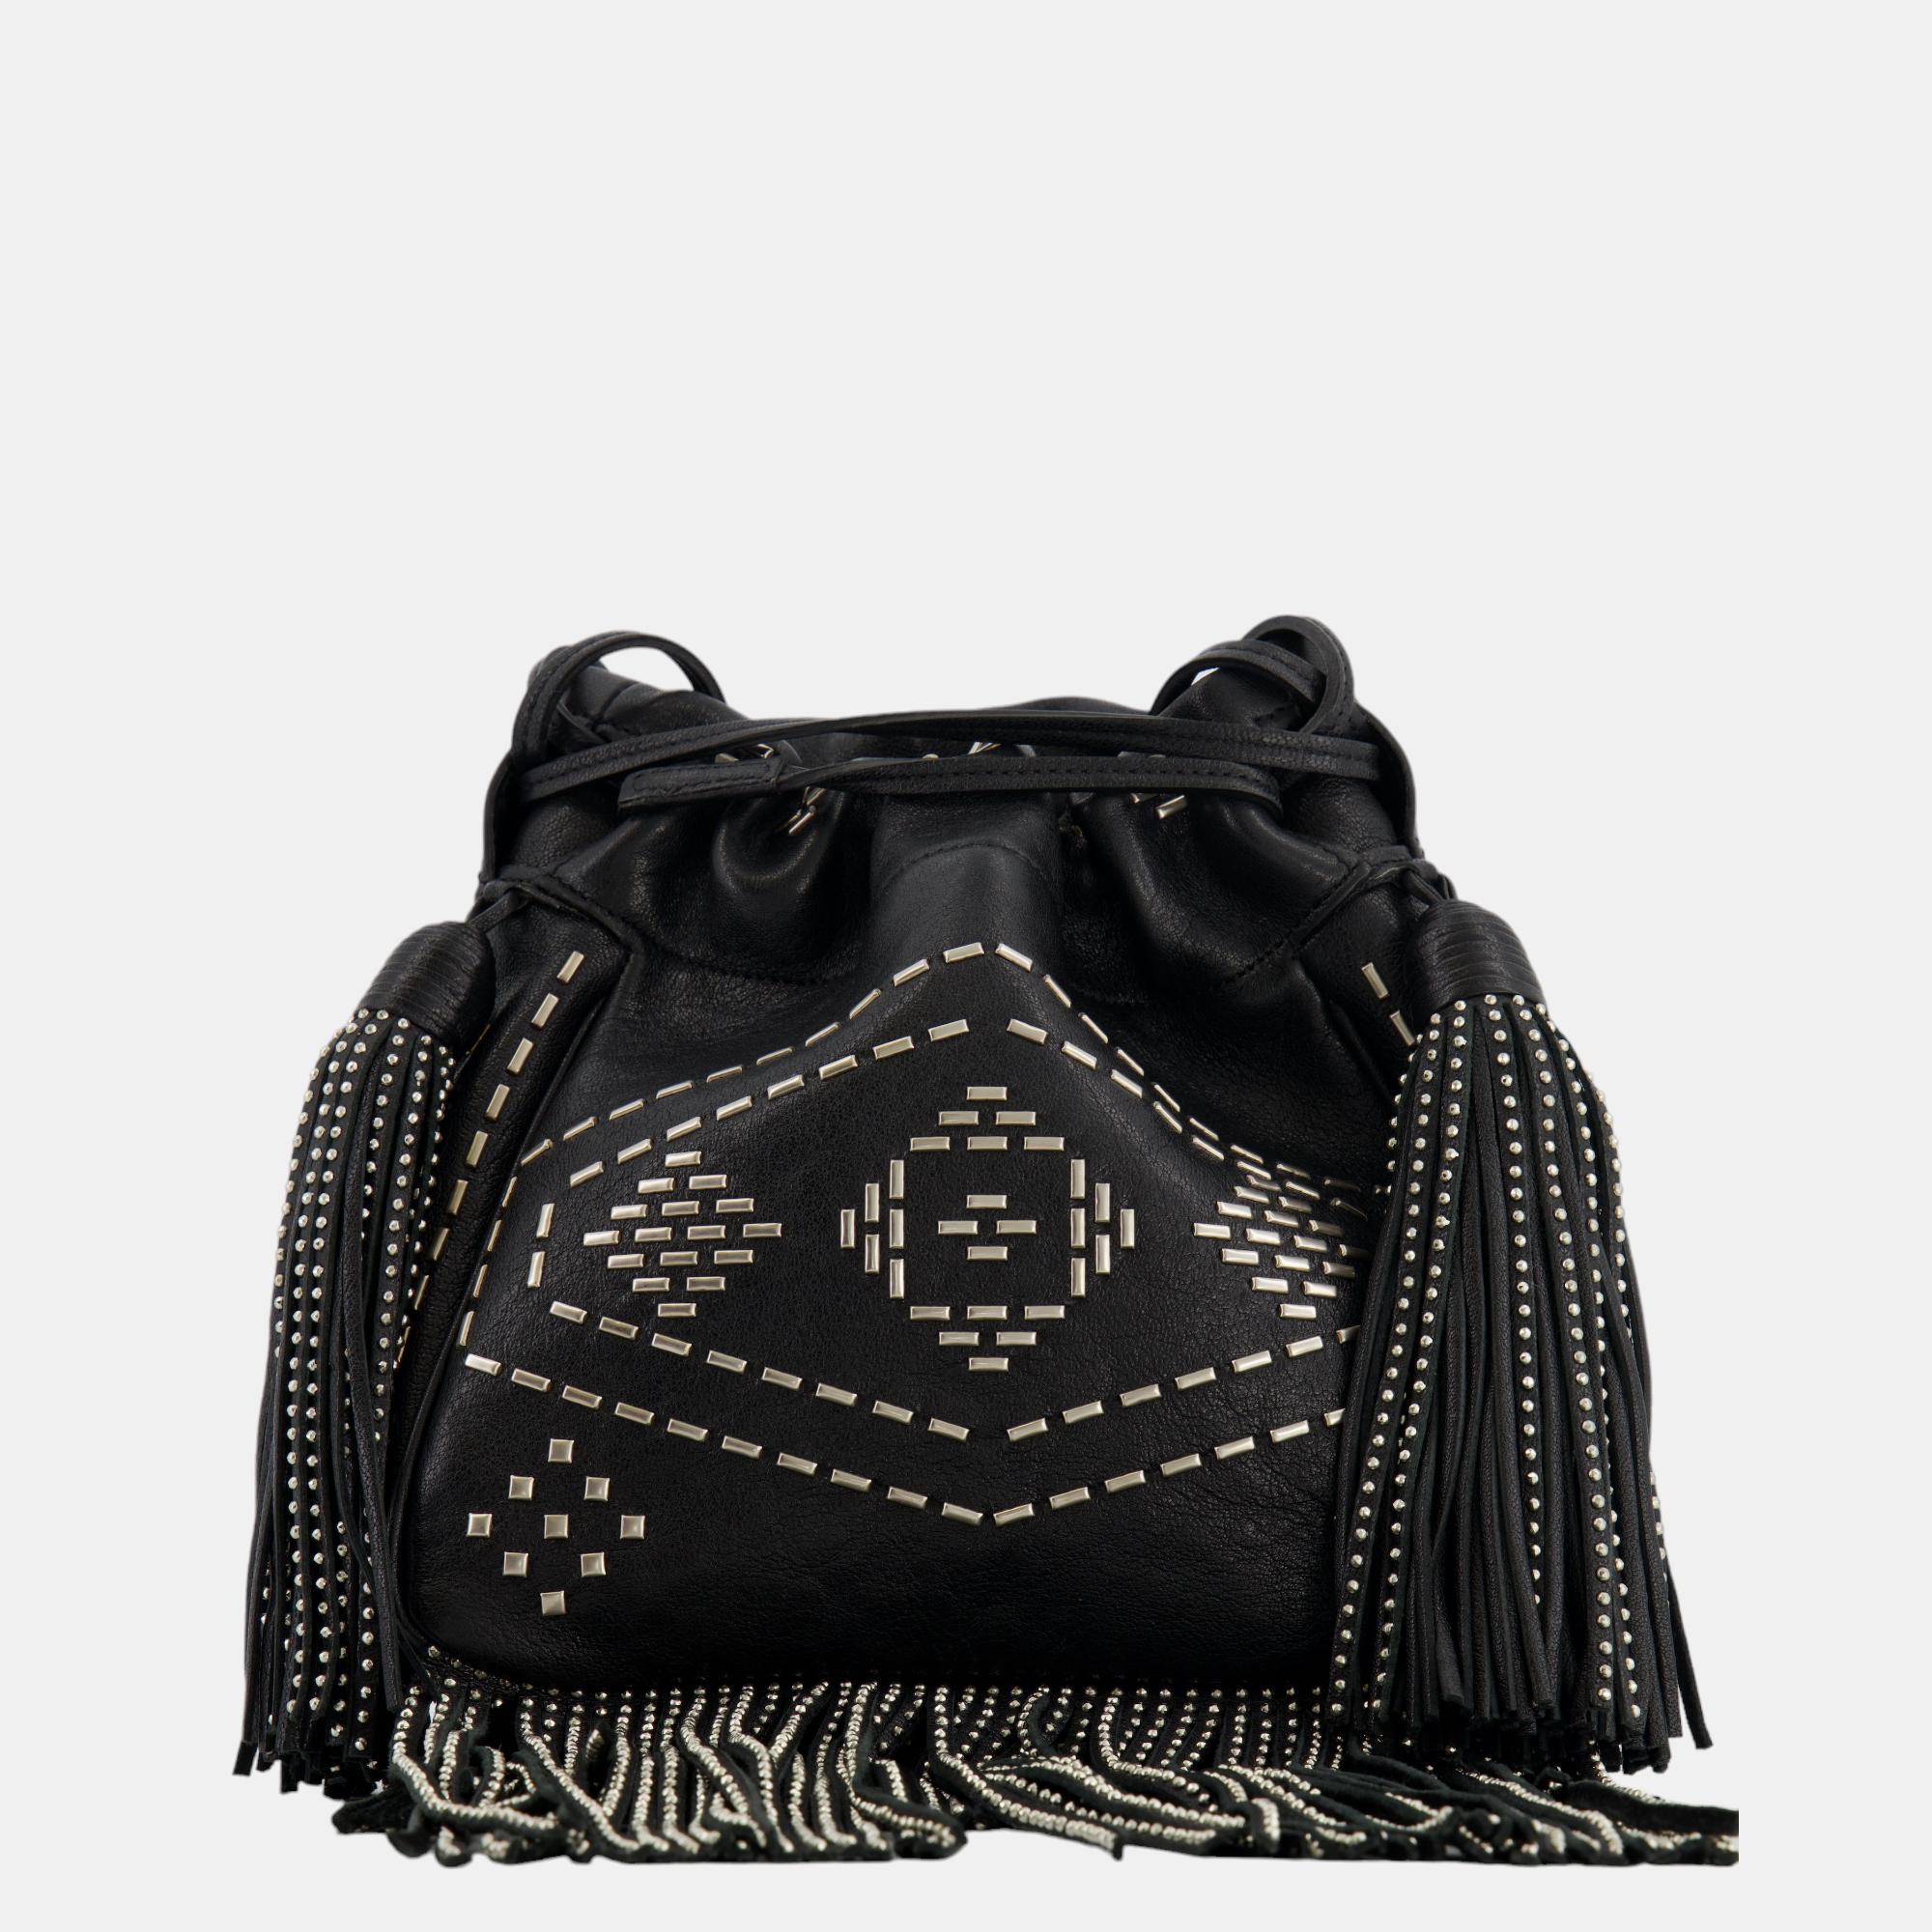 Saint Laurent Black Studded Bag With Fringe Details